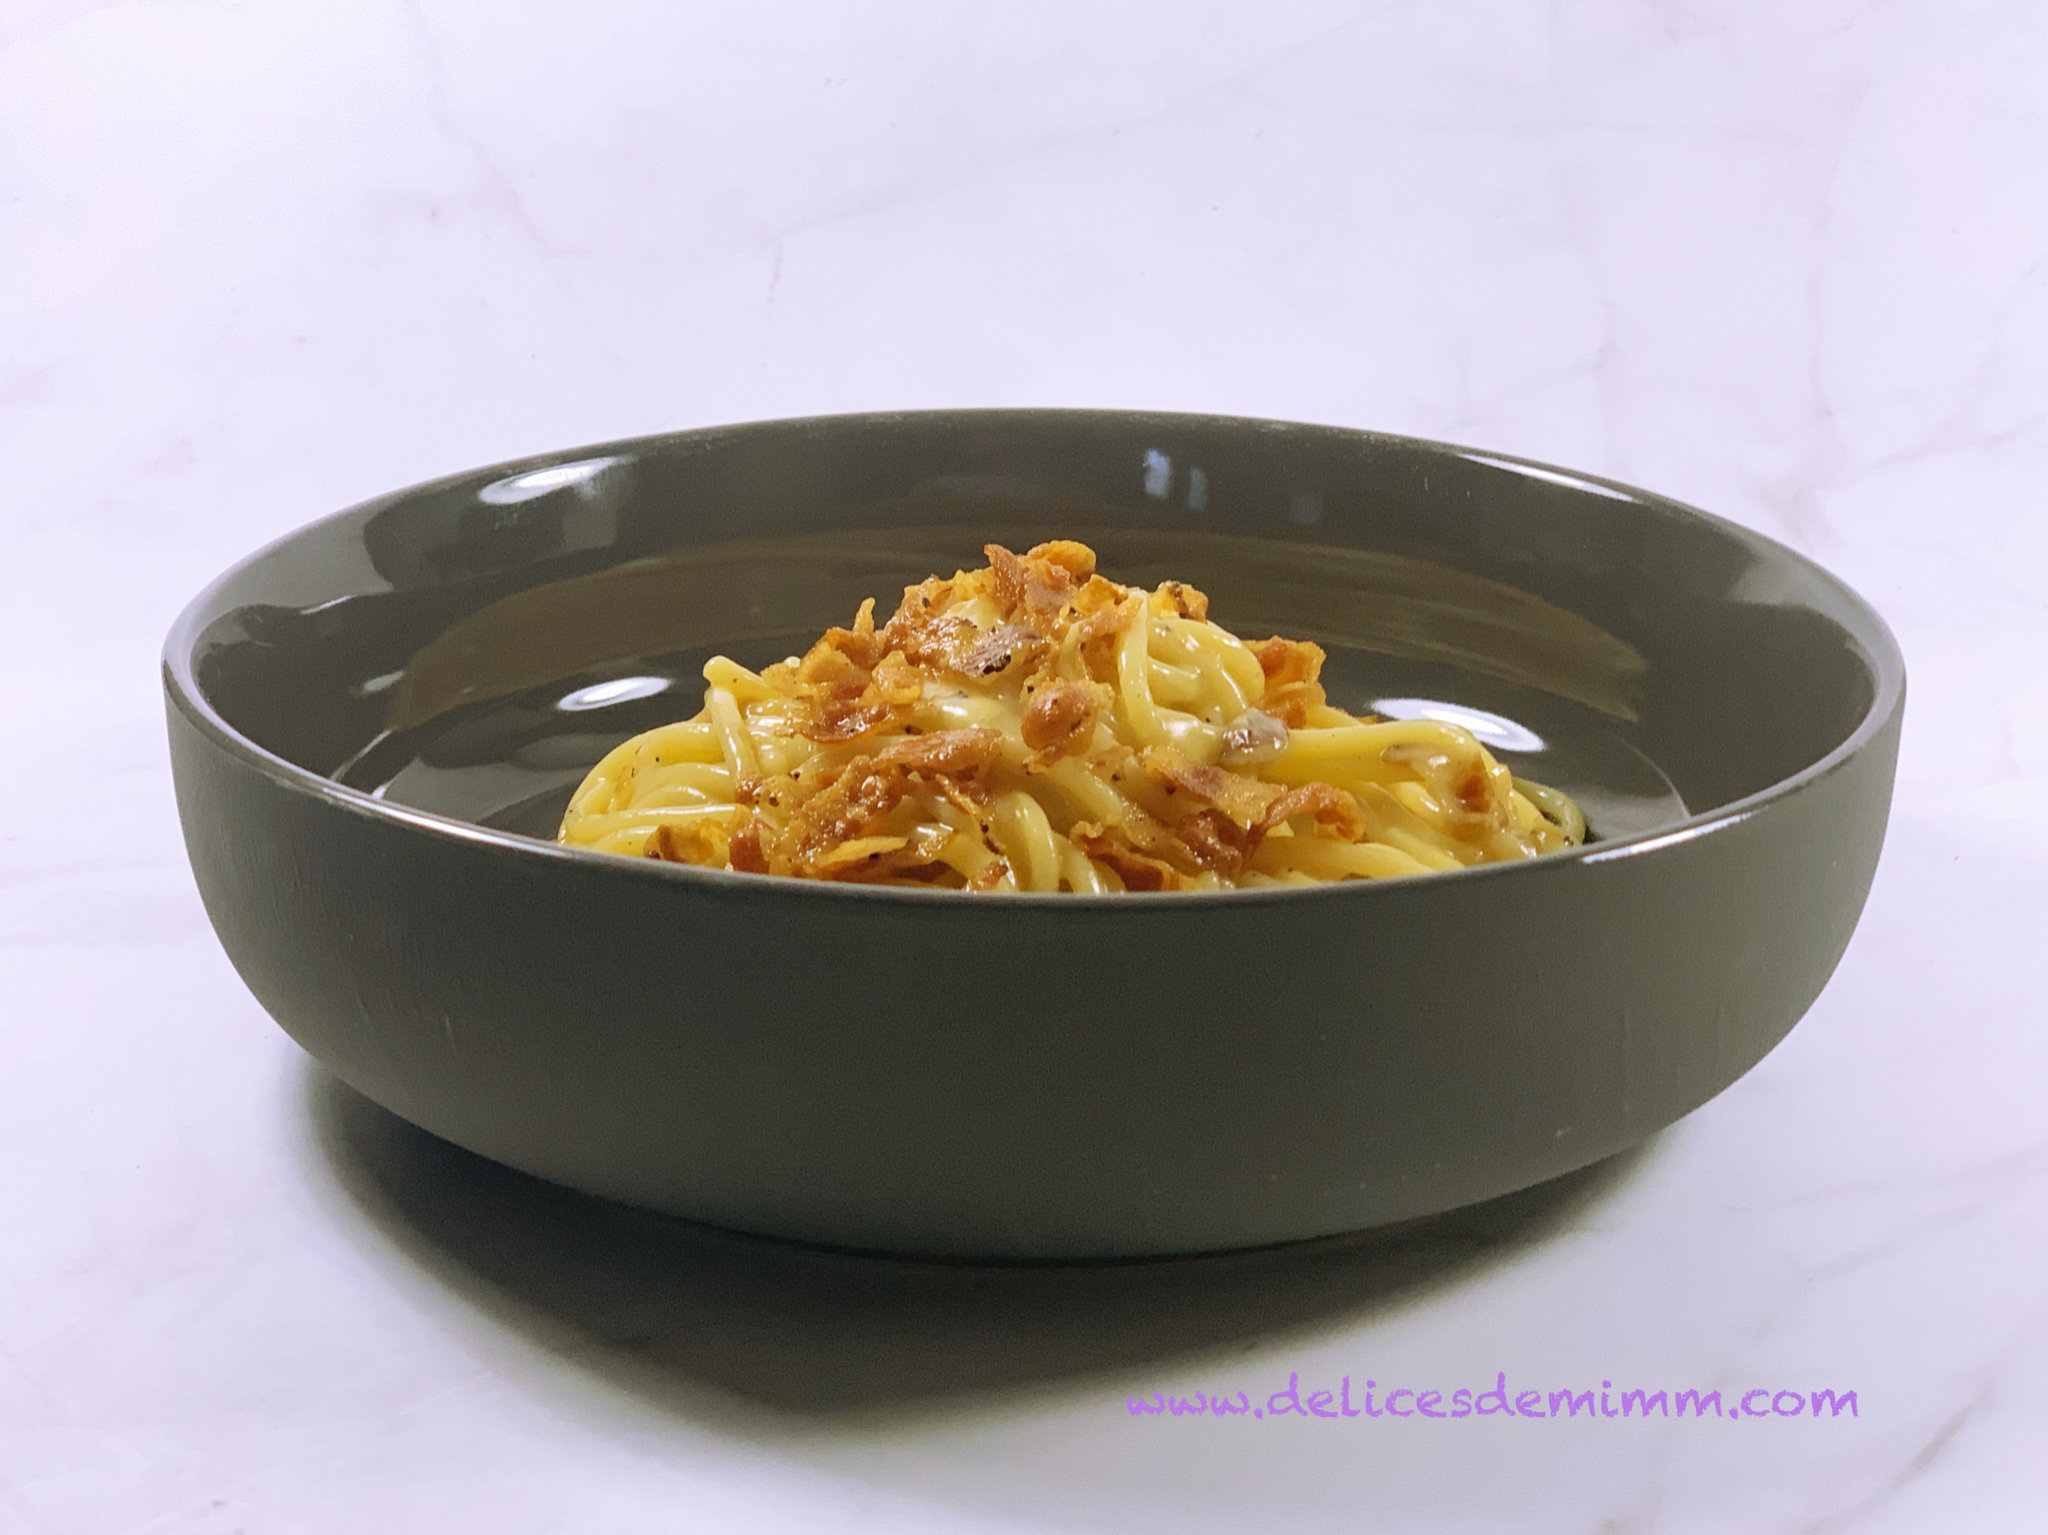 La recette des Spaghetti Carbonara de Simone Zanoni !